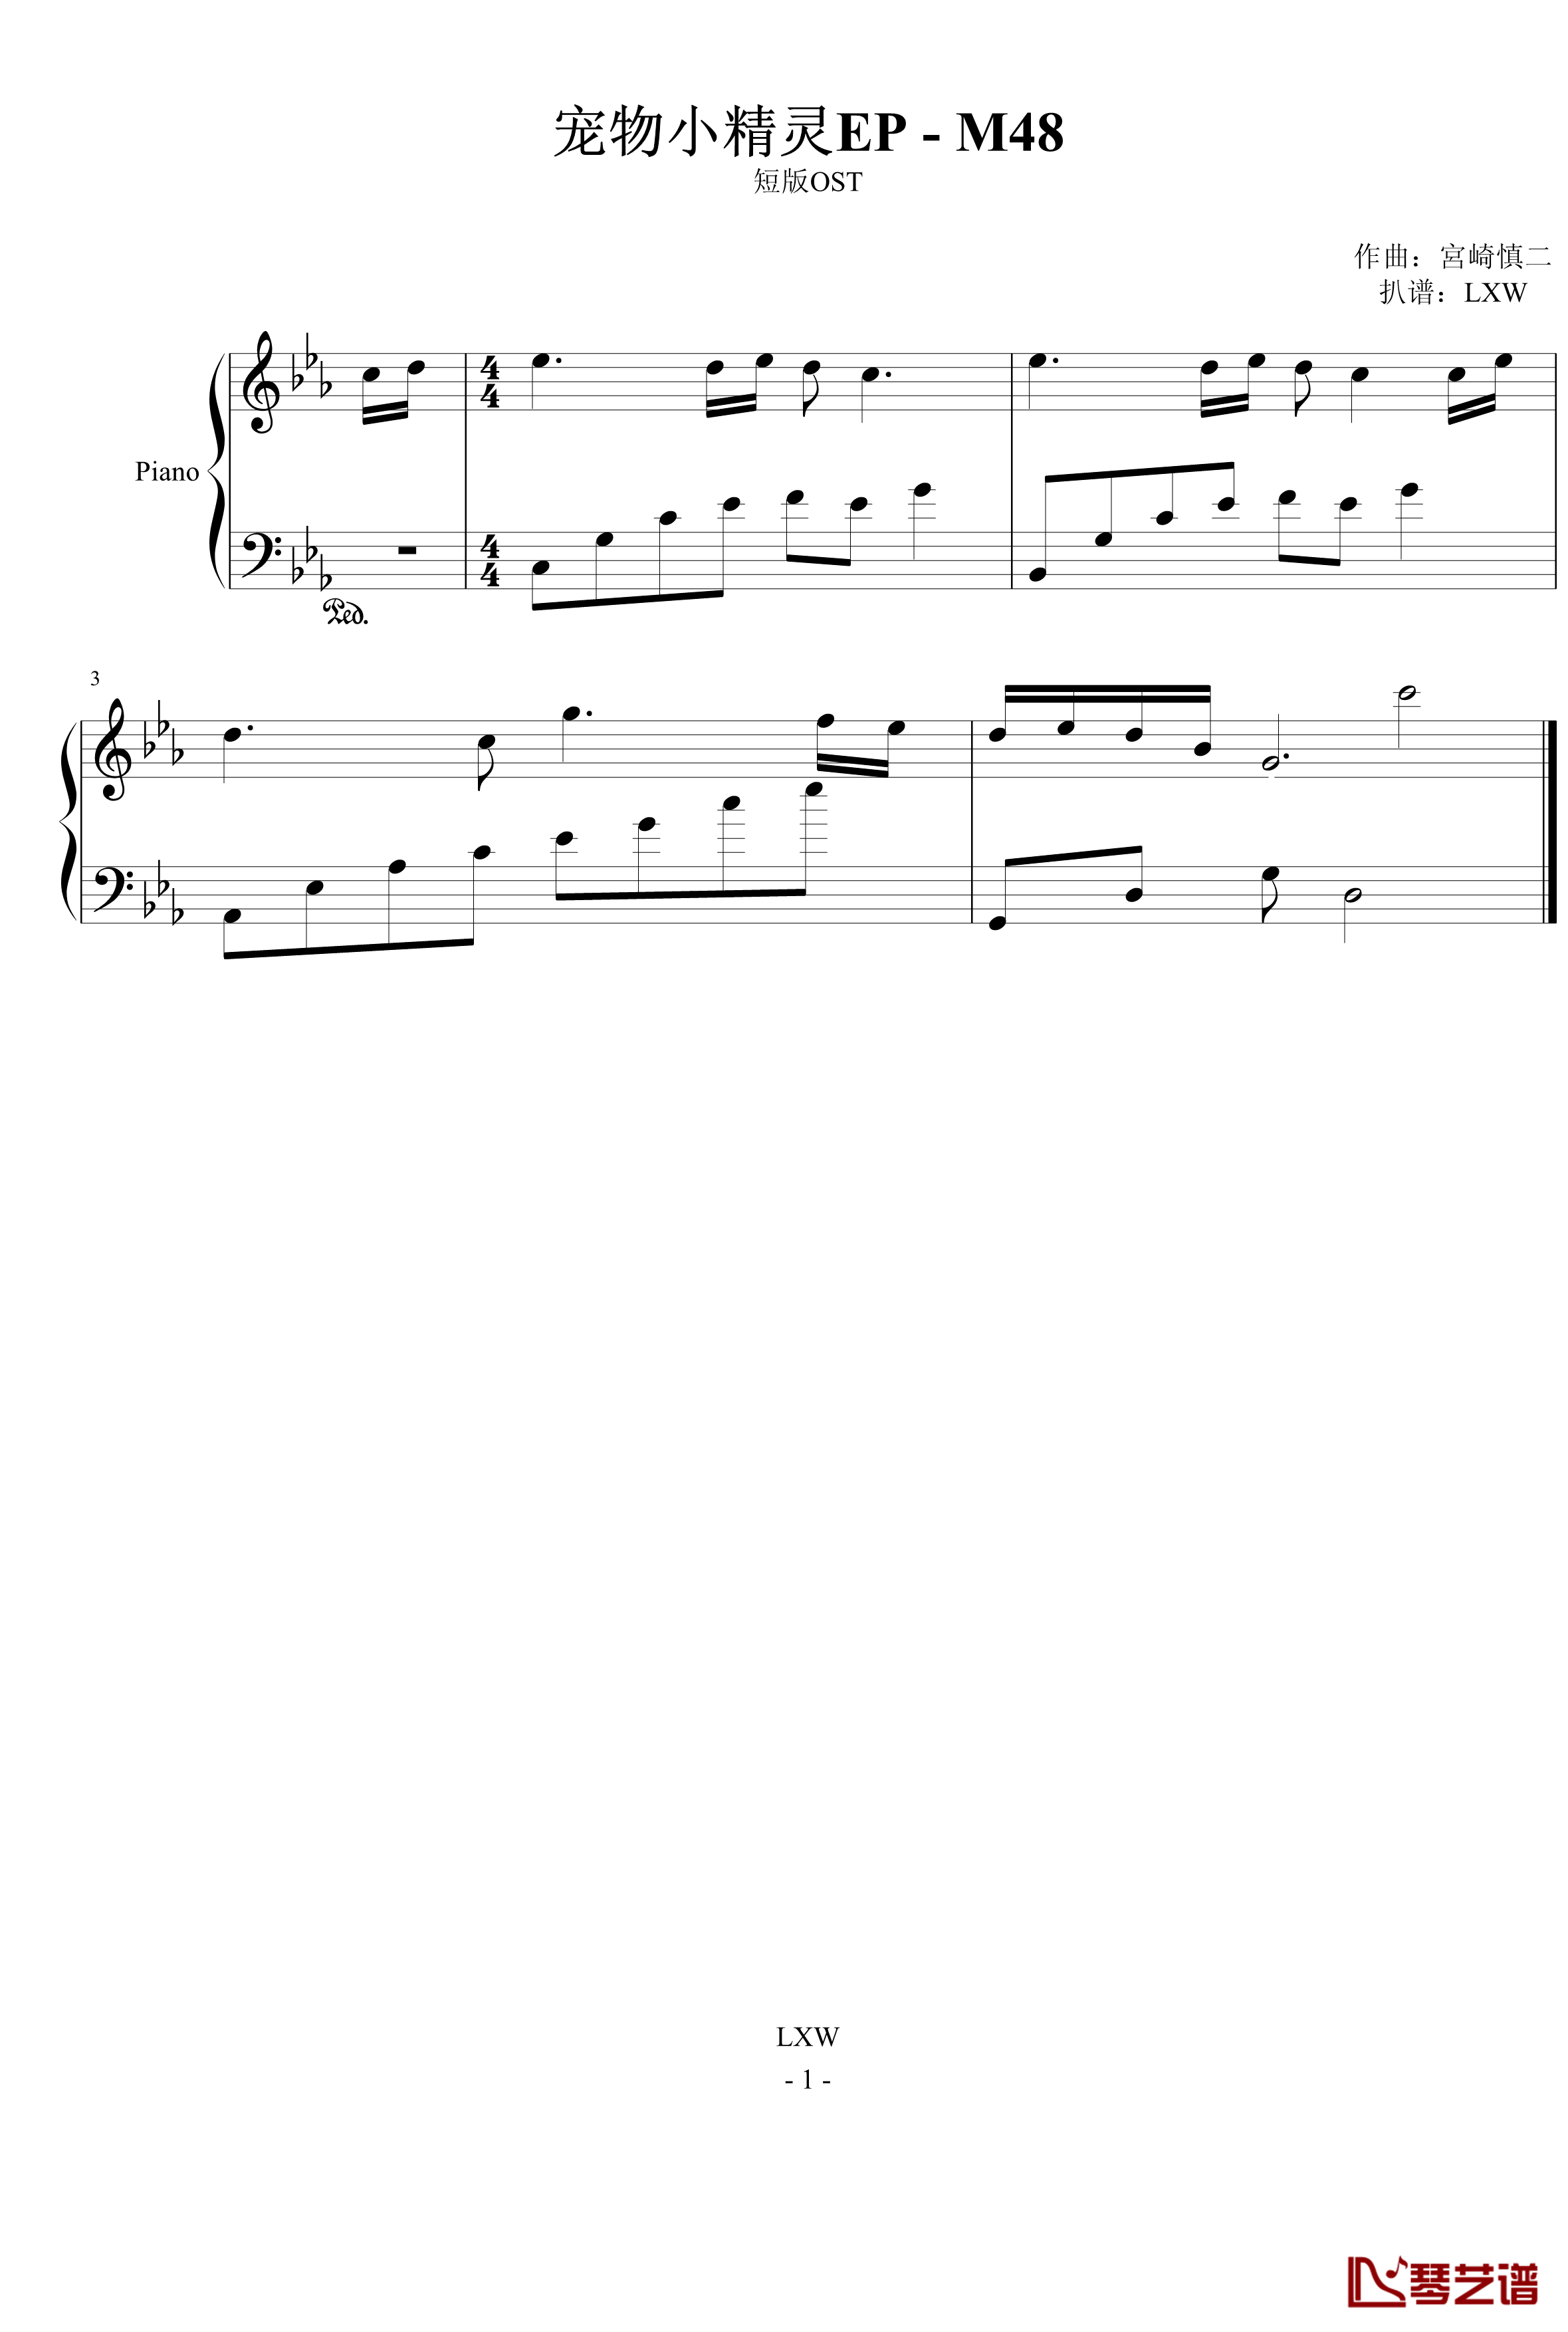 宠物小精灵钢琴谱-EP-M48-宠物小精灵1